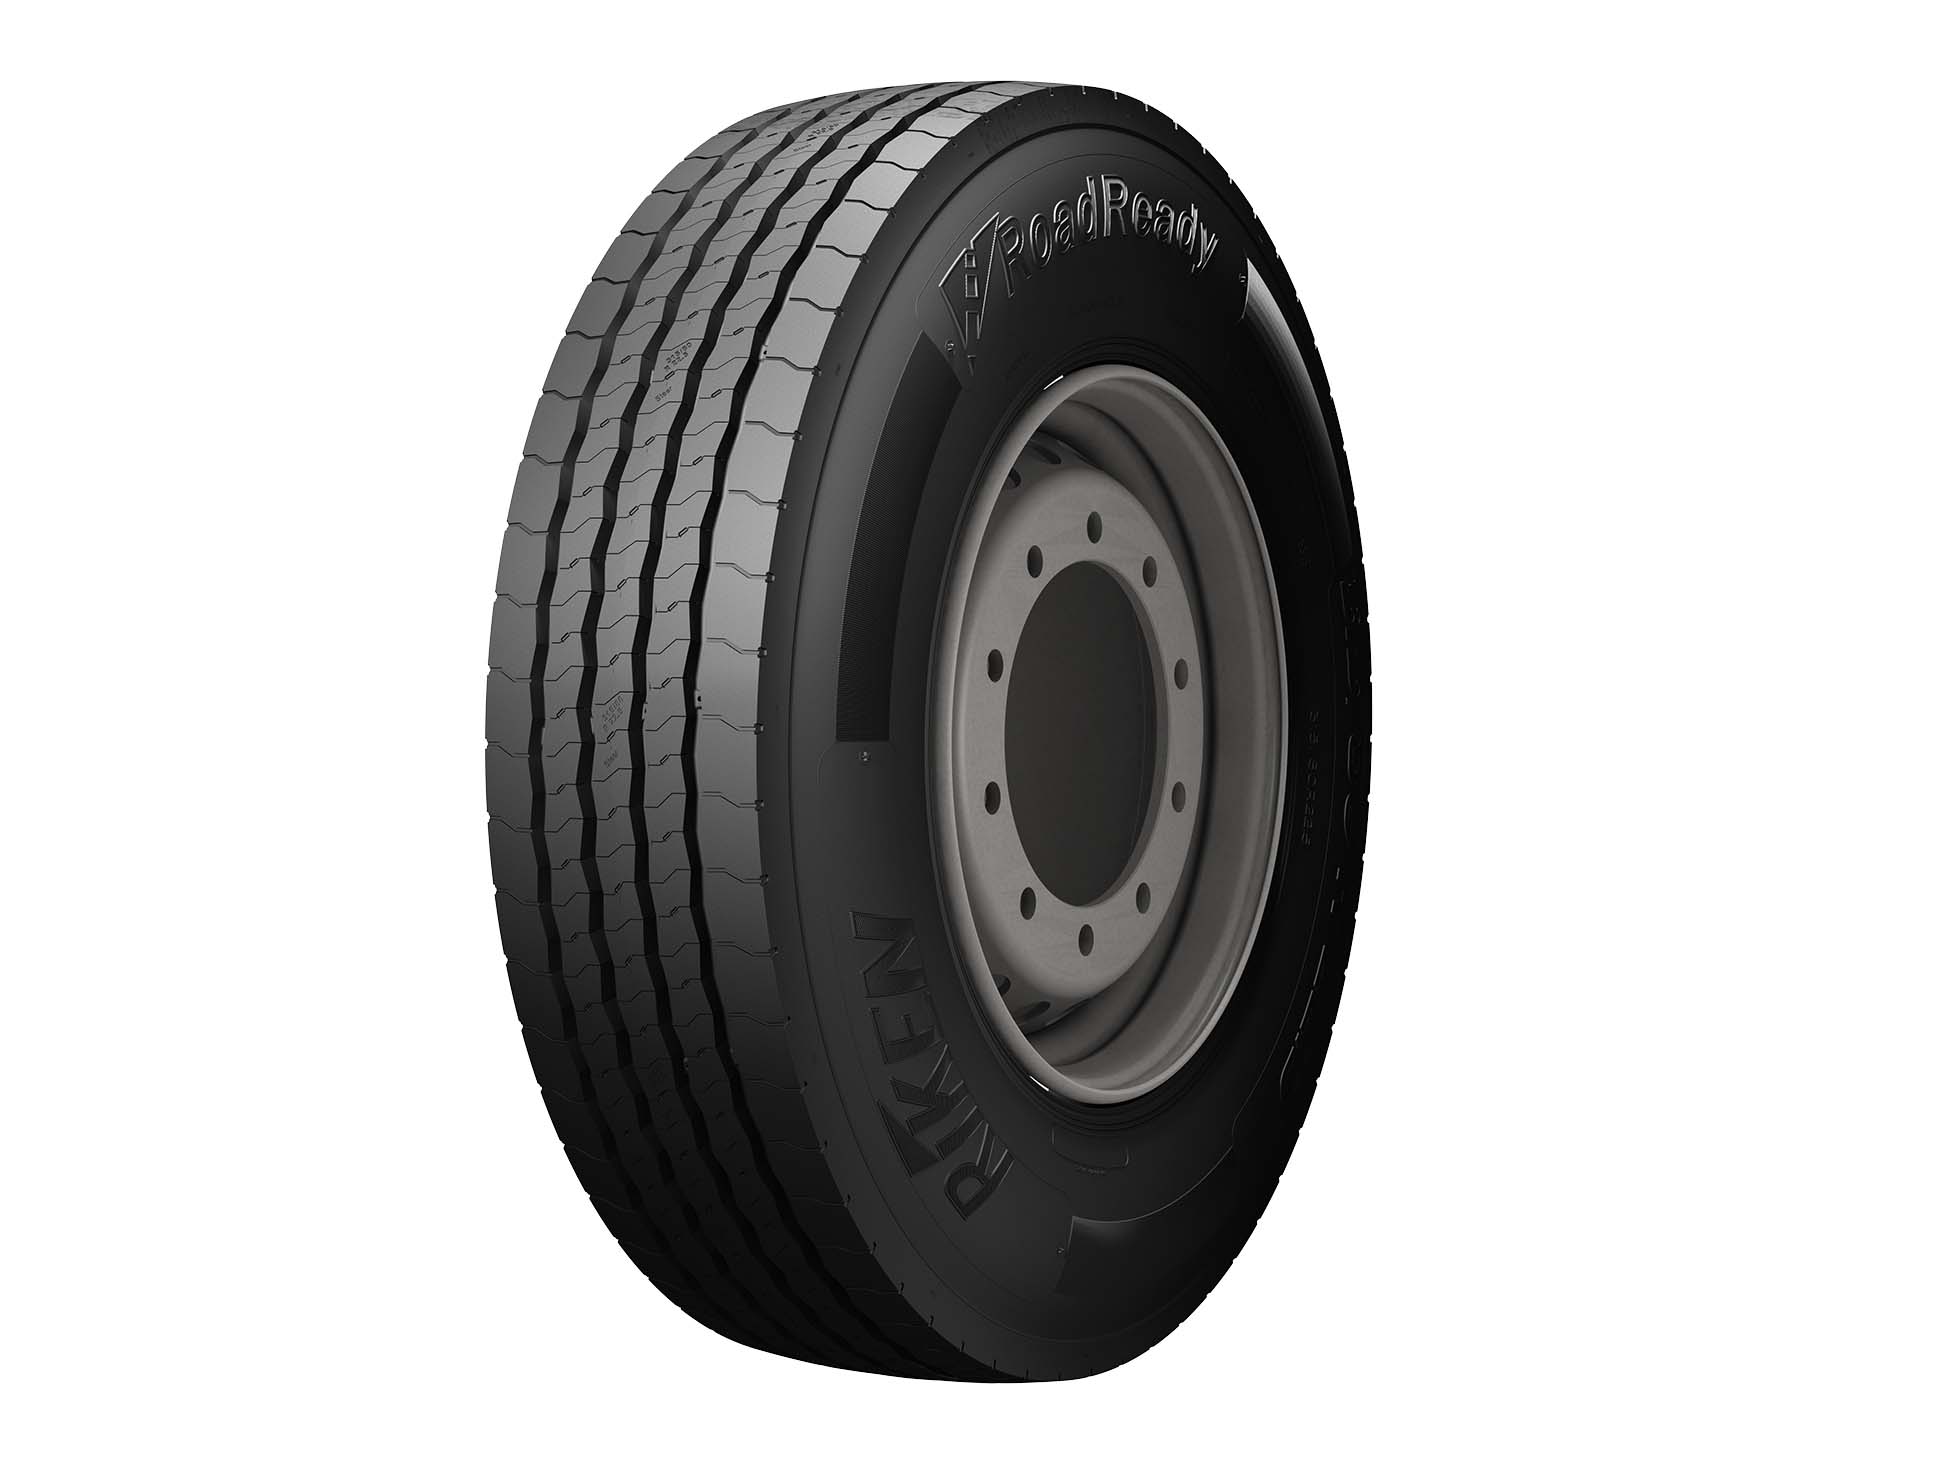 Gomme Nuove Riken 235/75 R17.5 132/130M ROAD READY S M+S (8.00mm) pneumatici nuovi Estivo